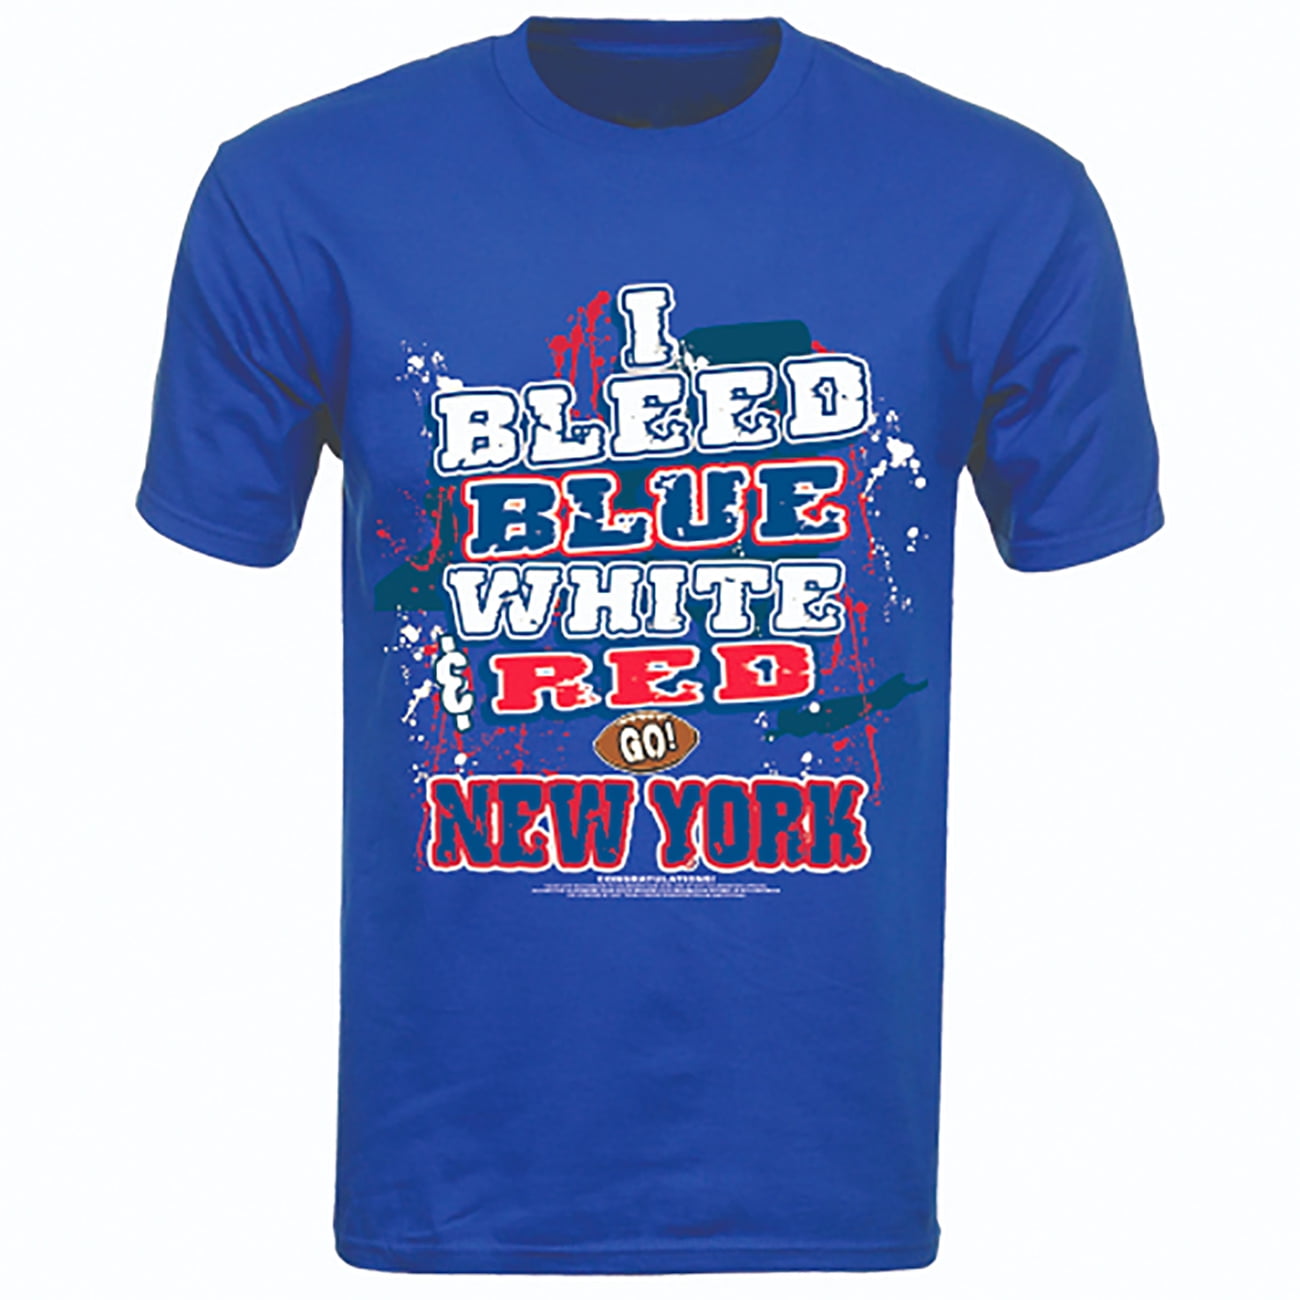 new york football i bleed blue, white, & red - go new york! blue t-shirt  